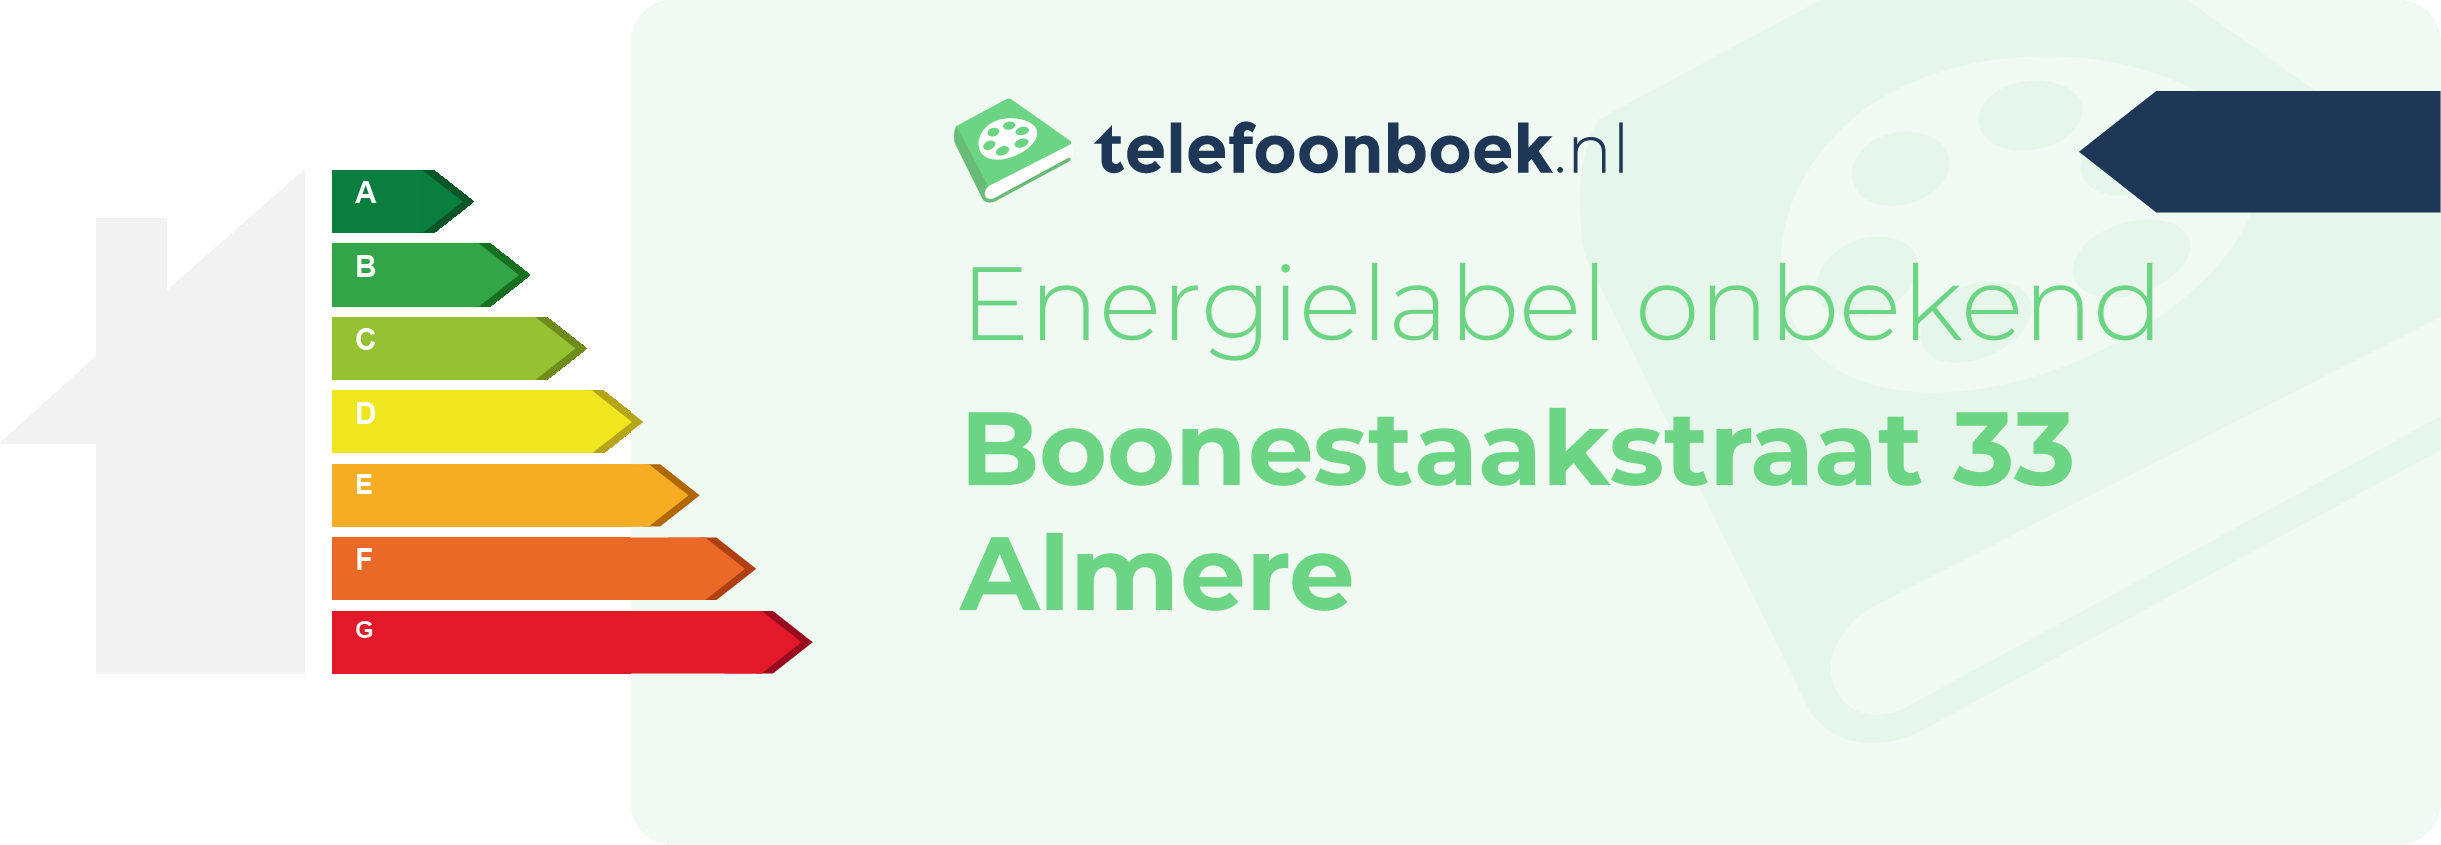 Energielabel Boonestaakstraat 33 Almere